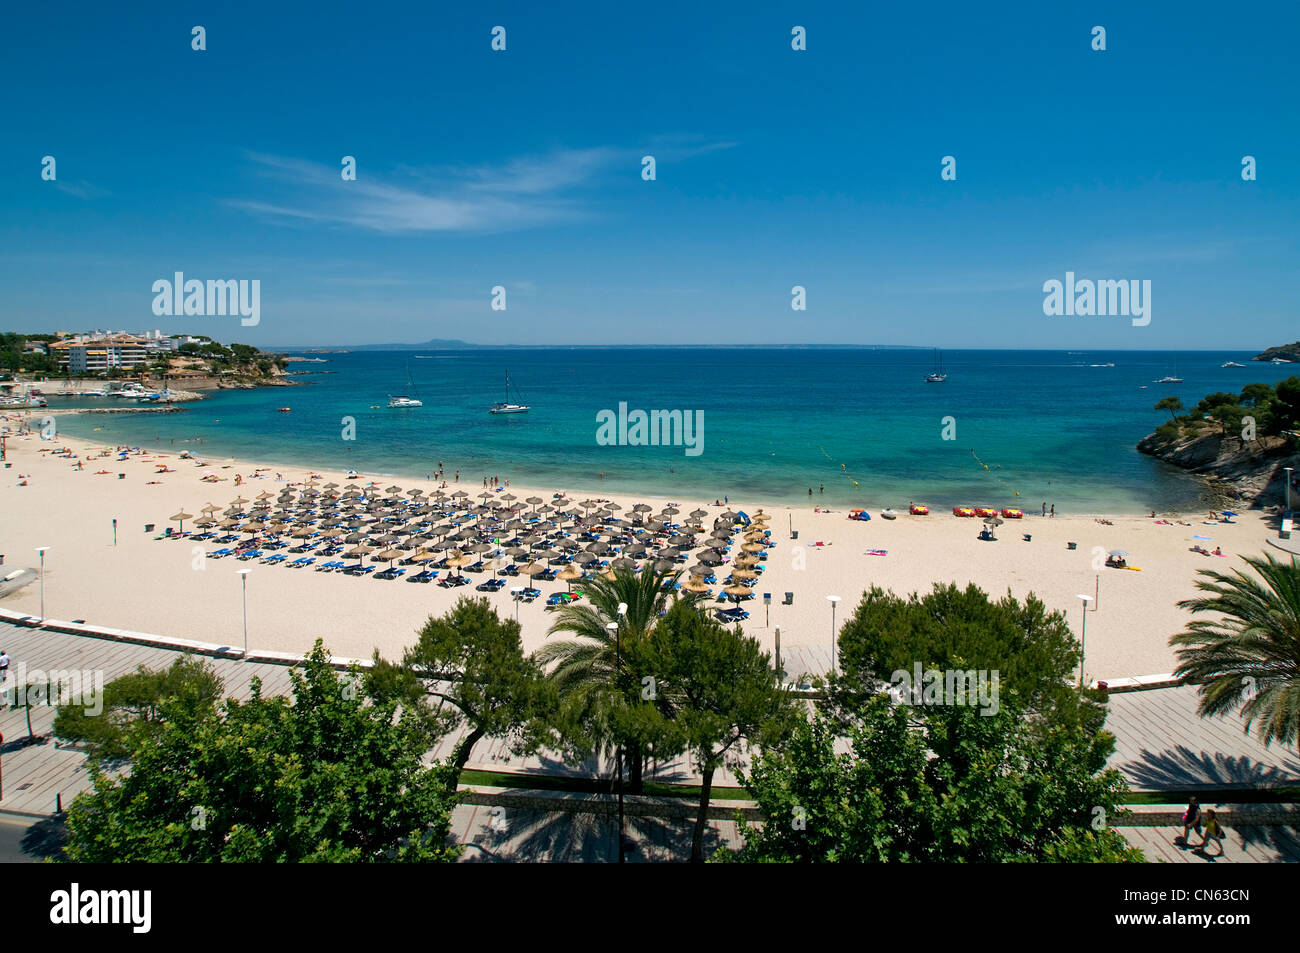 Palma Nova Beach Majorca Balearics Spain Stock Photo